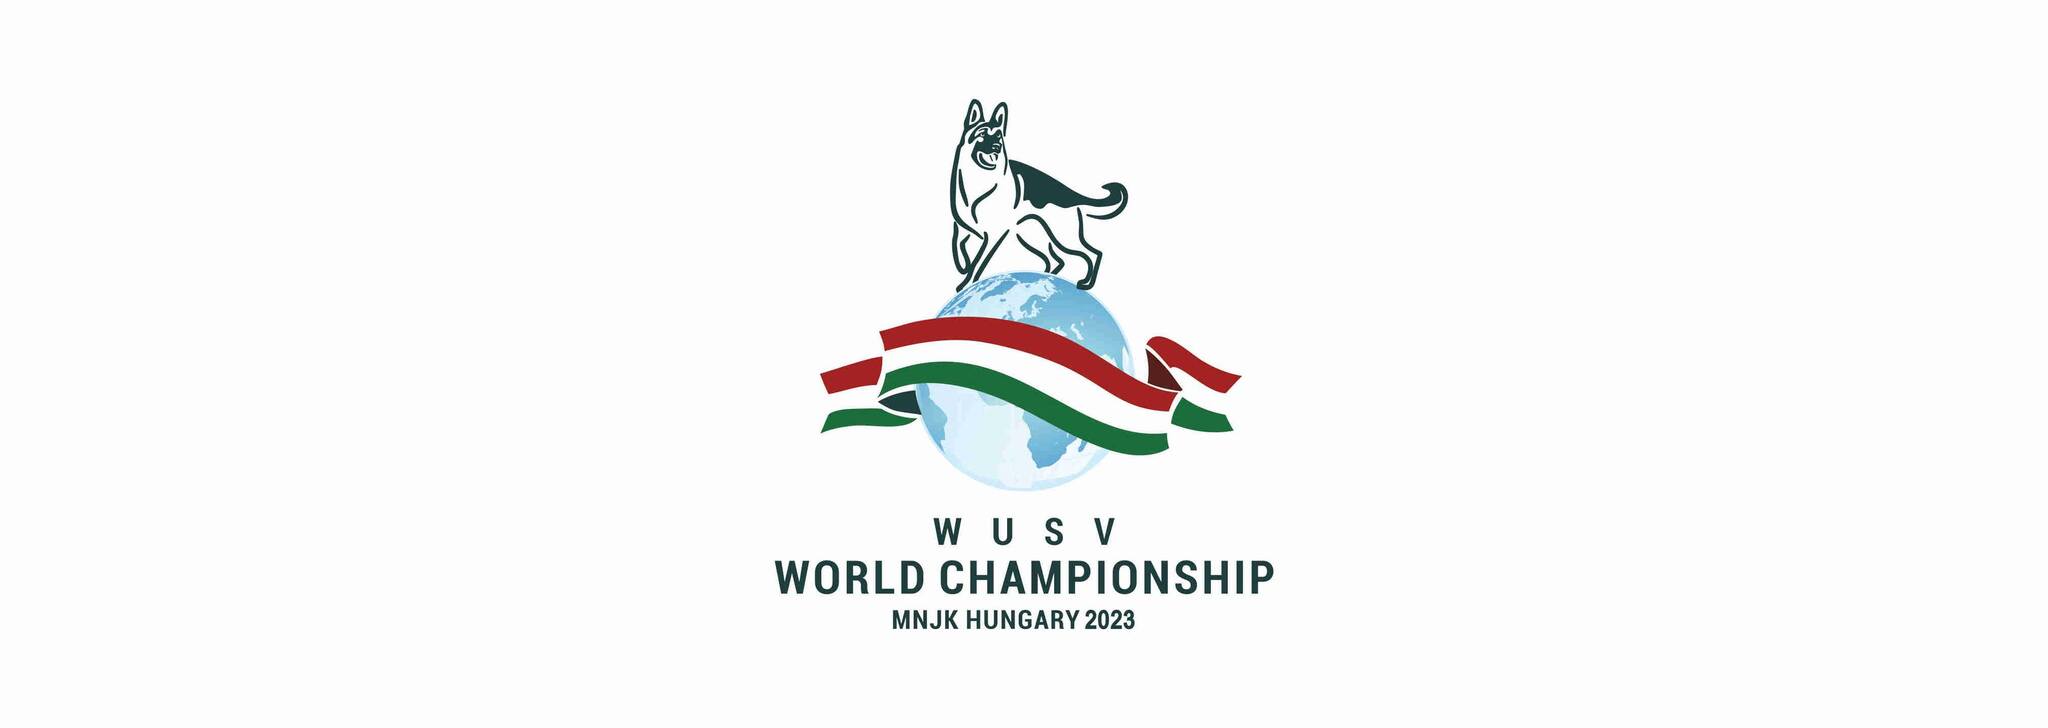 WUSV World Championship 2023 - Hungary